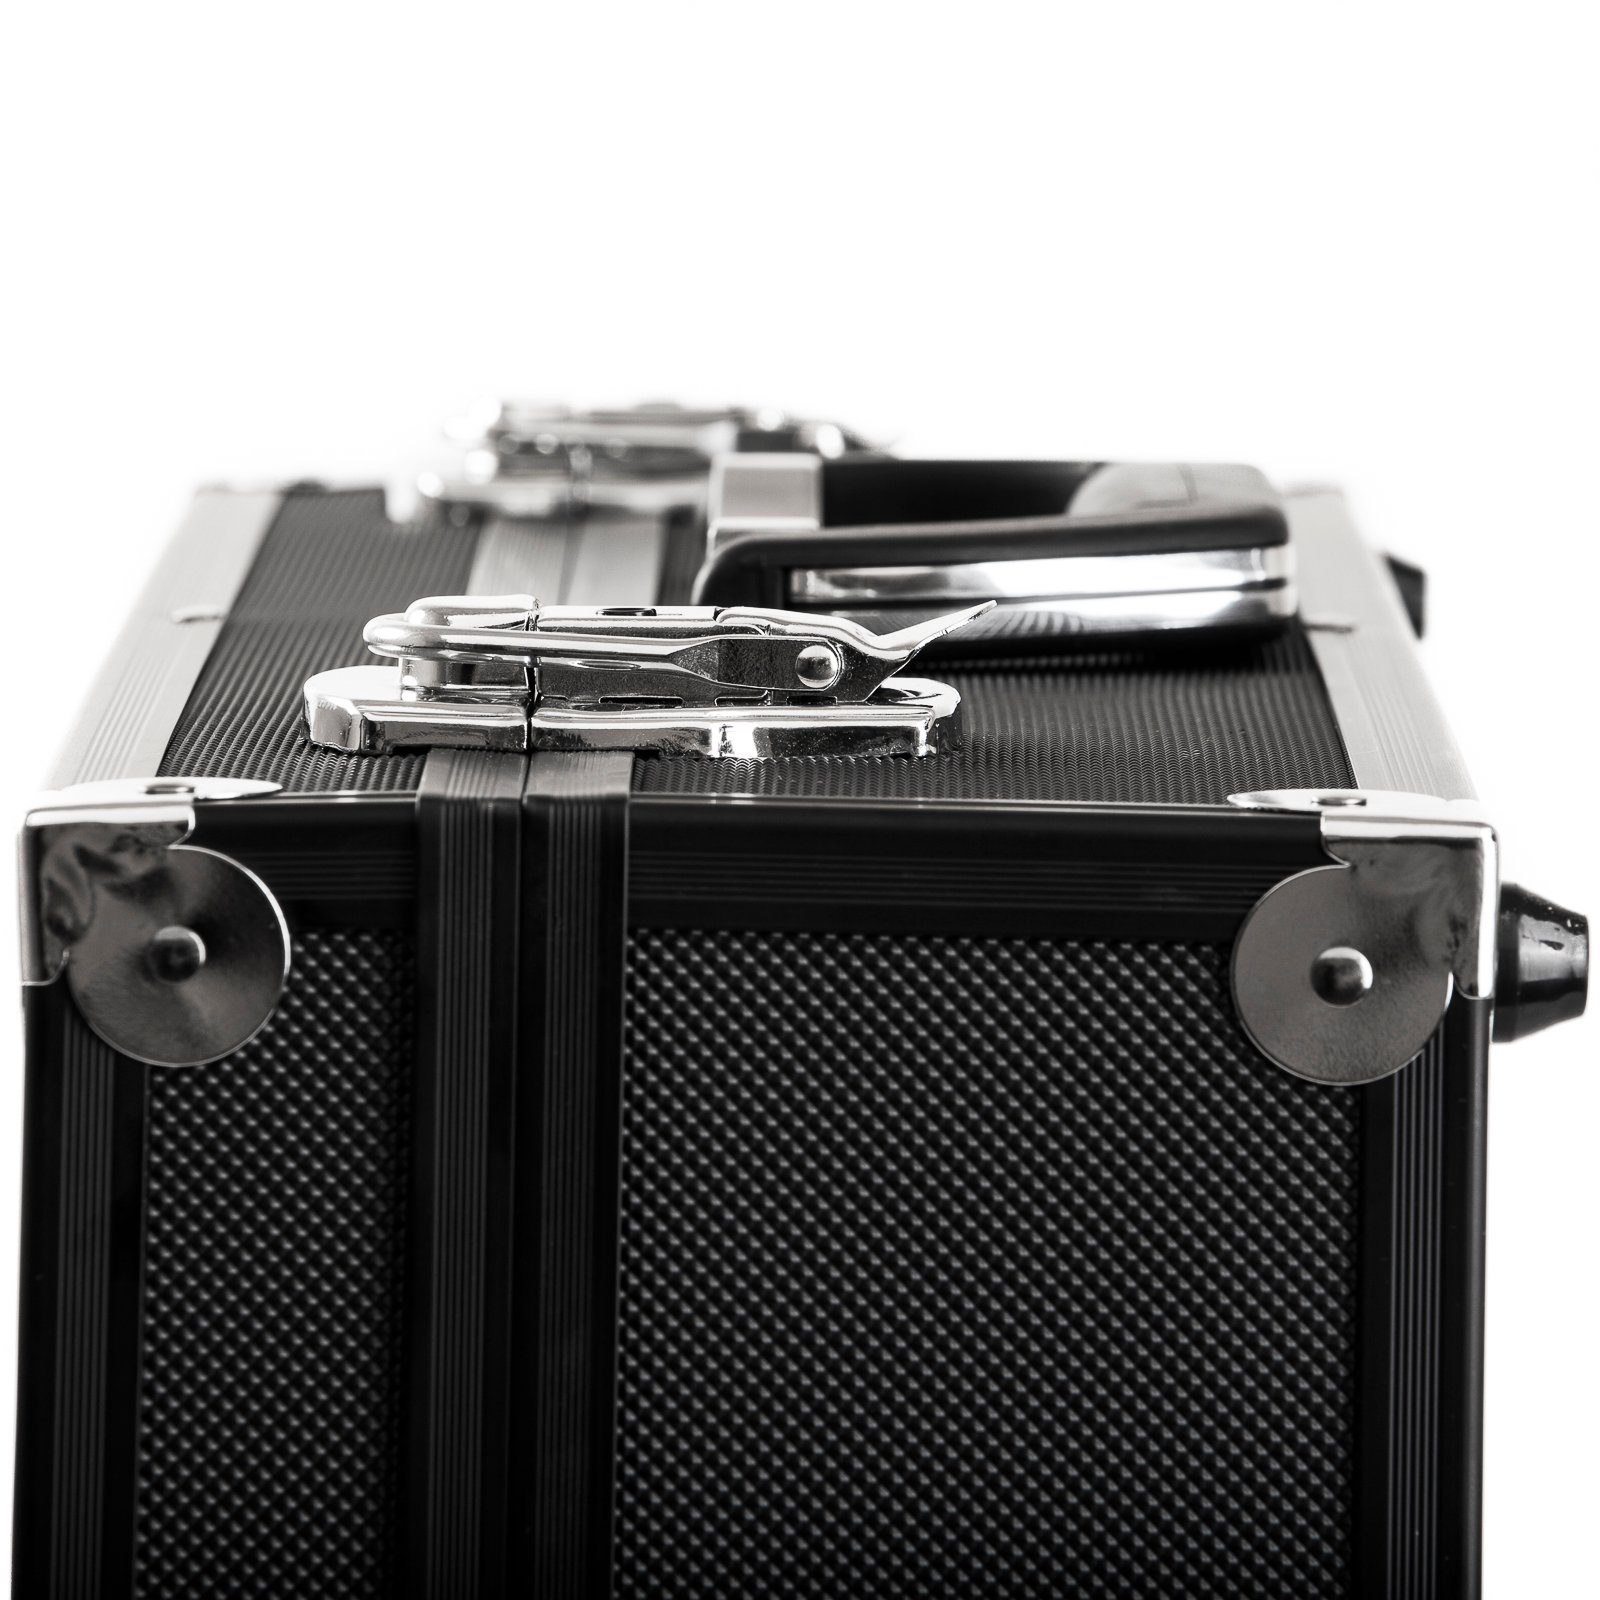 BRUBAKER Koffer Equipment, aus - Schaumstoff, Werkzeug Kameras, für keine Fotokoffer Rollen, mit Schutzkoffer Alukoffer Aluminium Schwarz Transportkoffer Abschließbarer